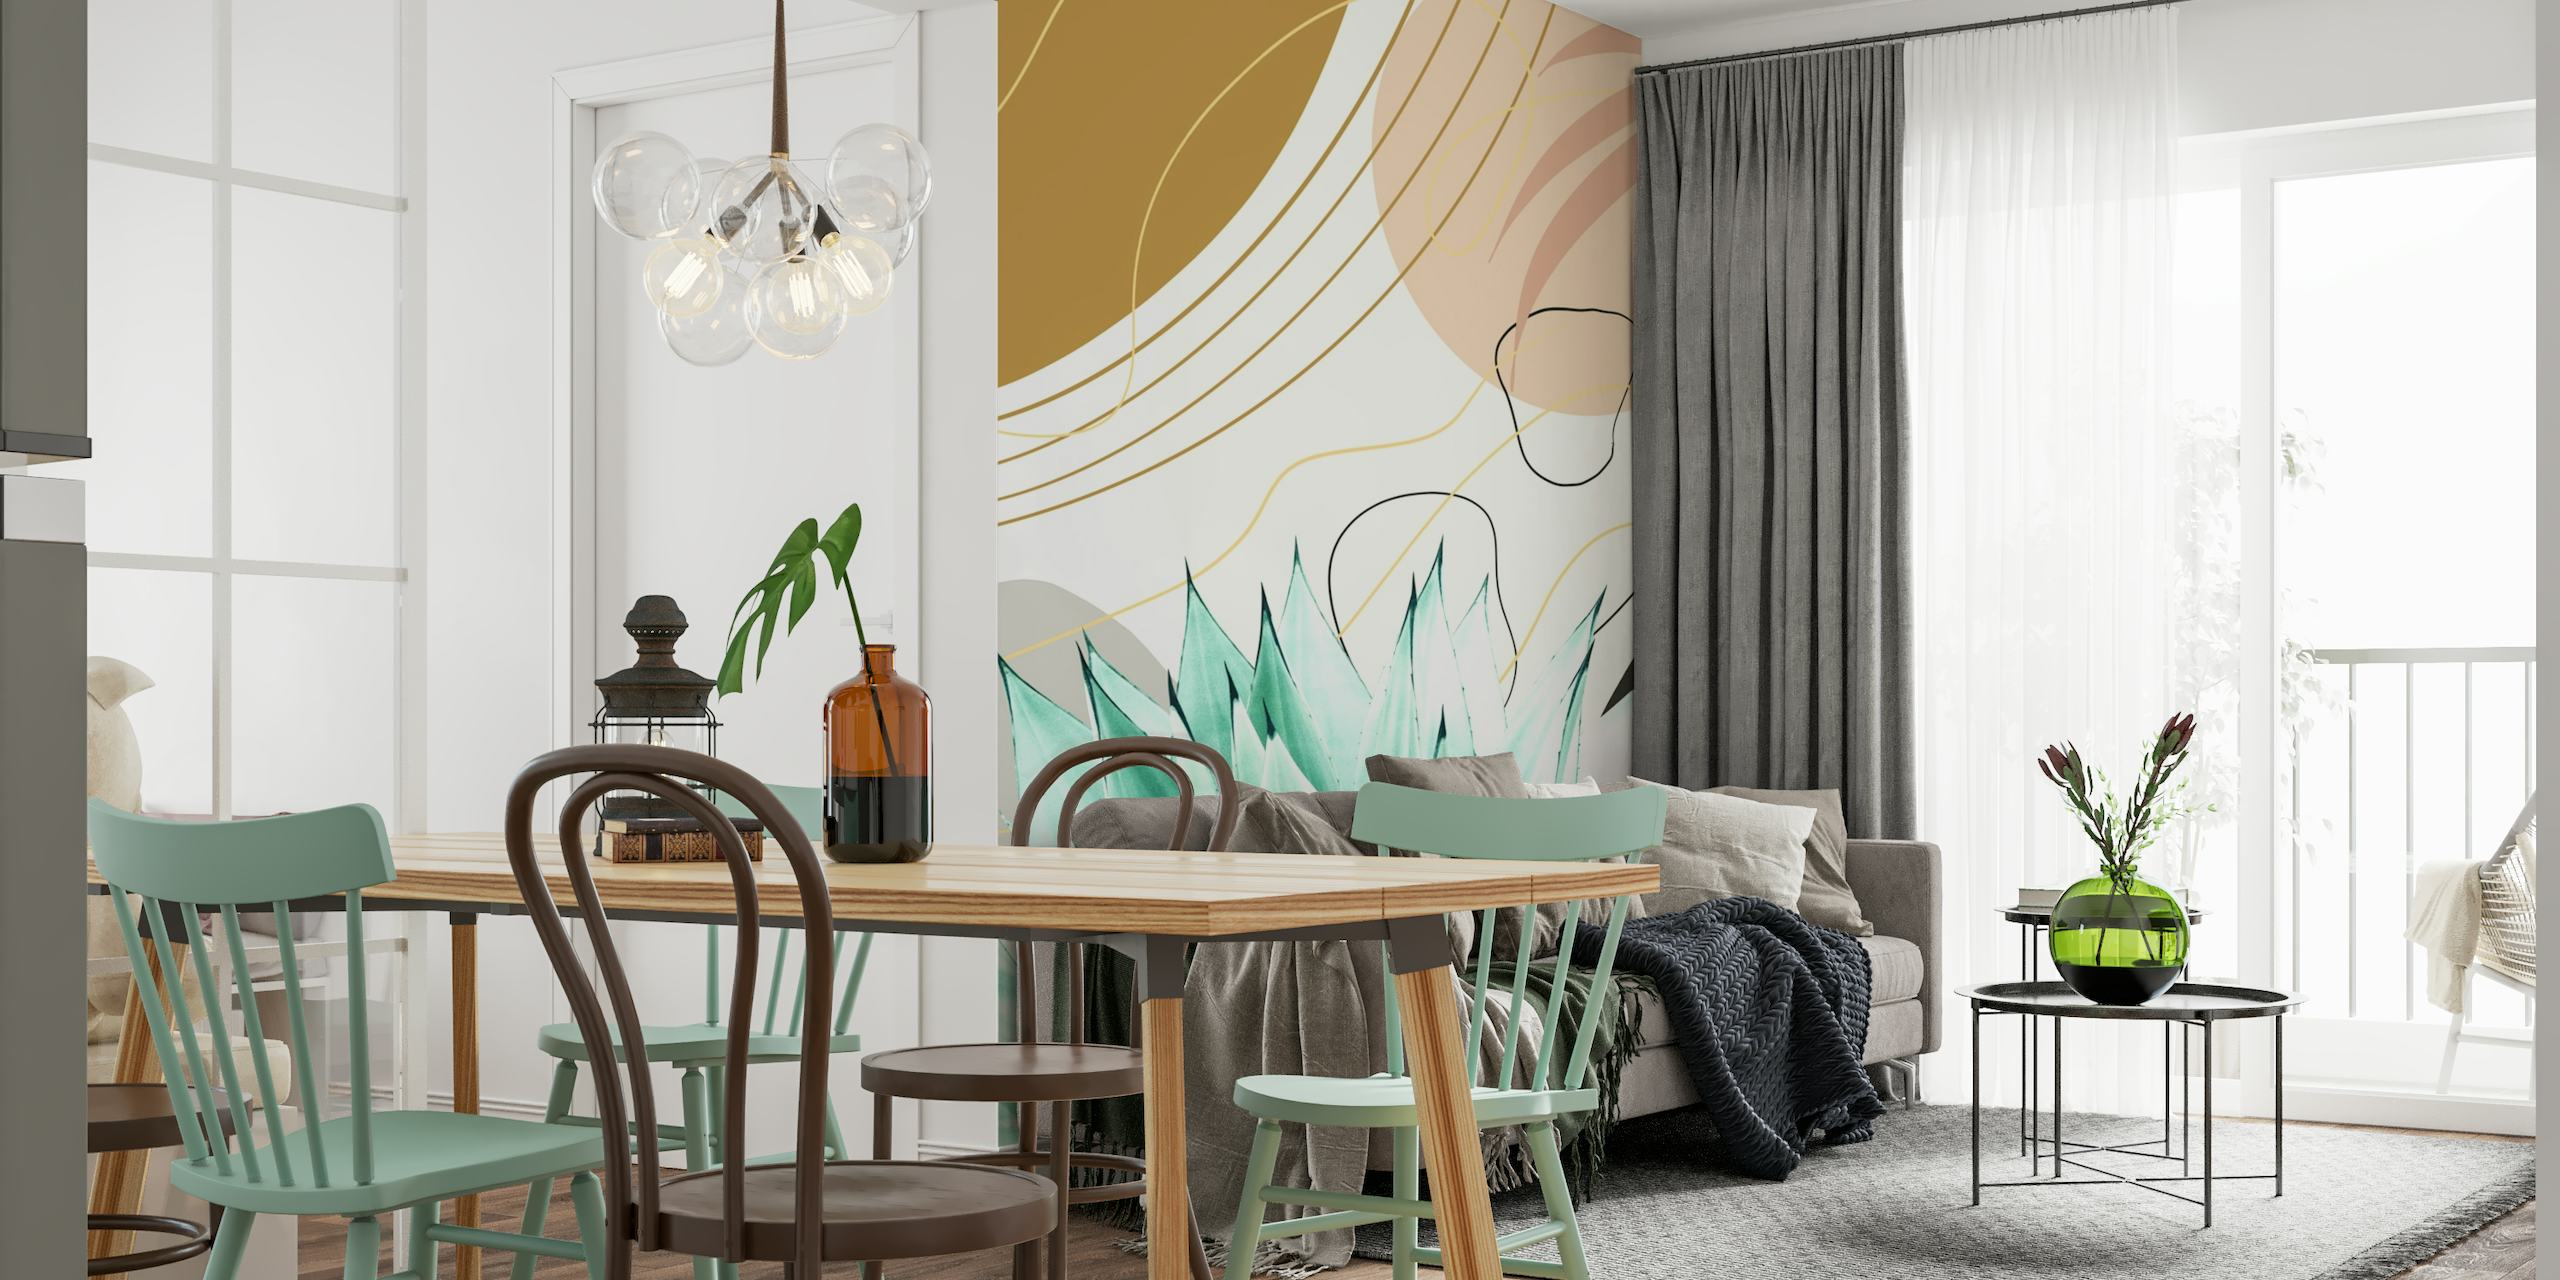 Tyylitelty agave-kasvi abstraktissa kuviossa taupe-, kerma- ja kultakoristeilla seinämaalauksessa